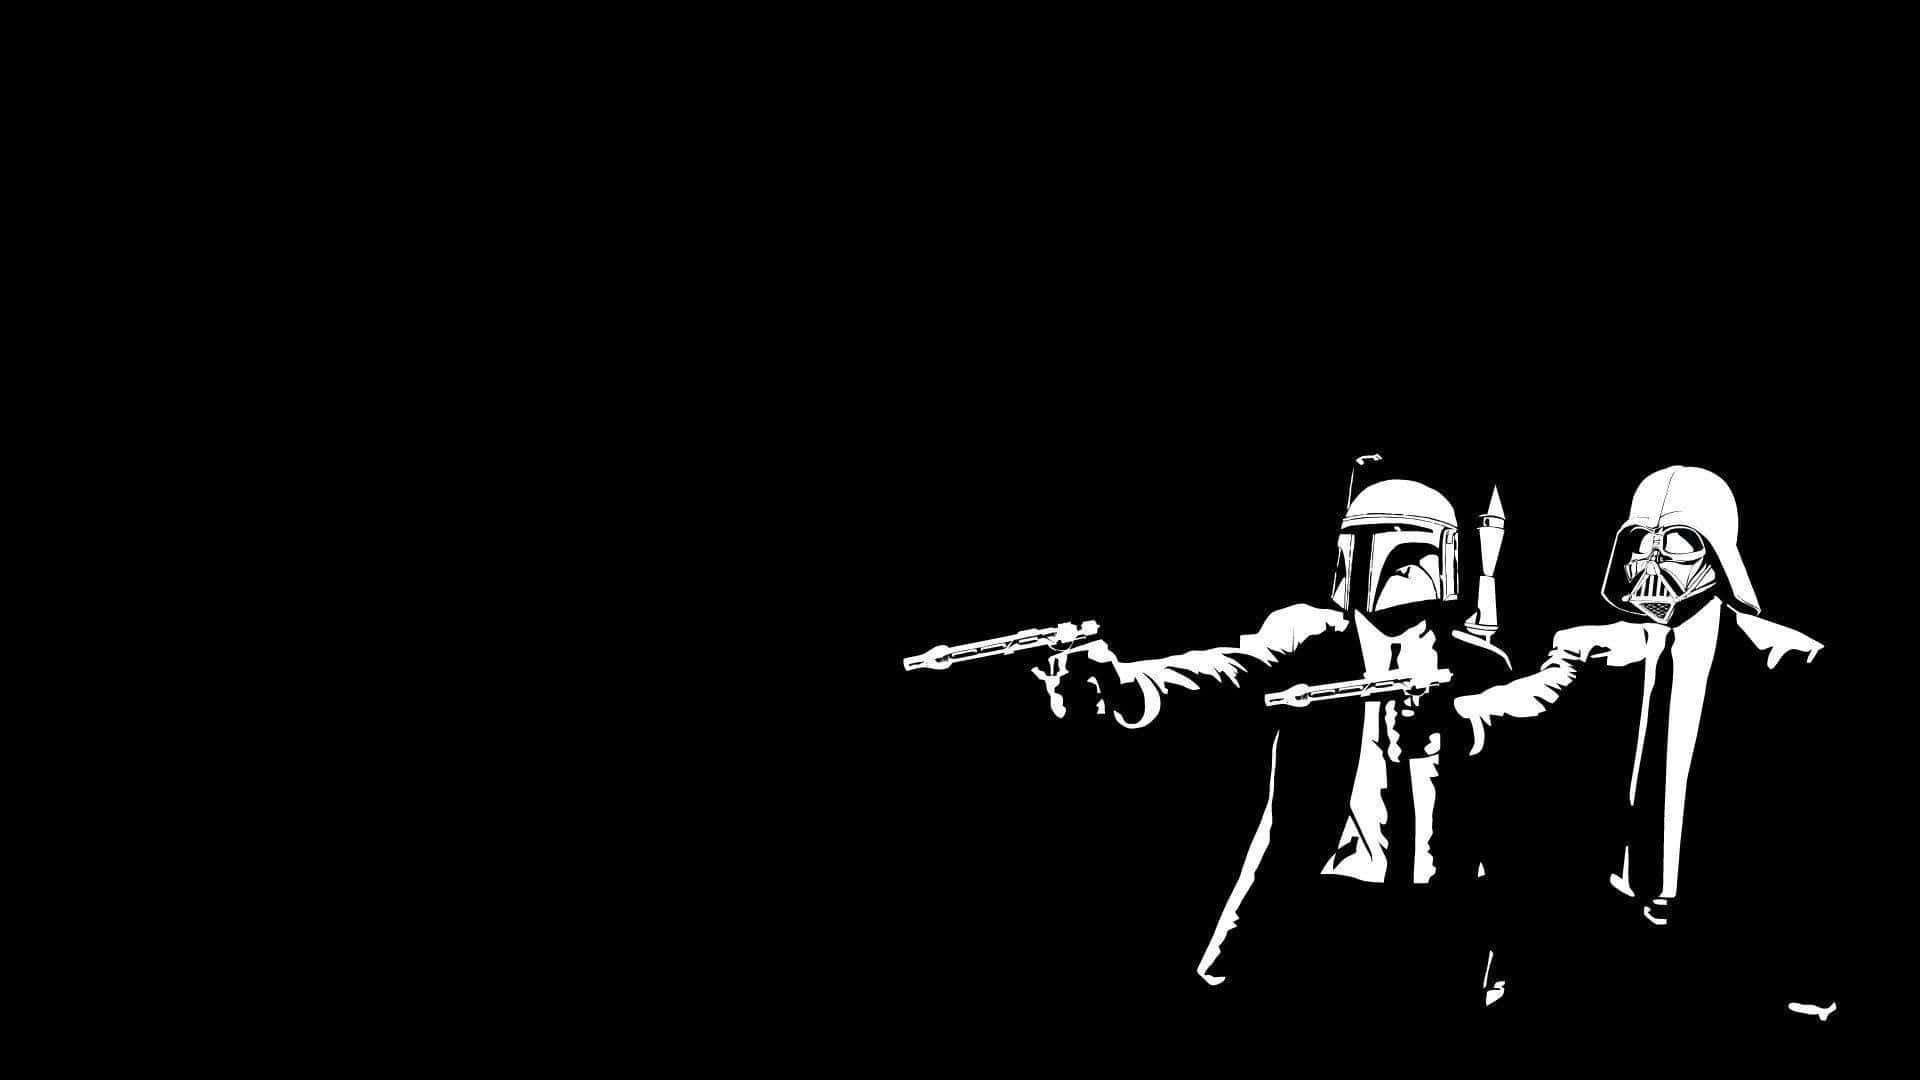 Star Wars Boba Fett Darth Vader Art Wallpaper